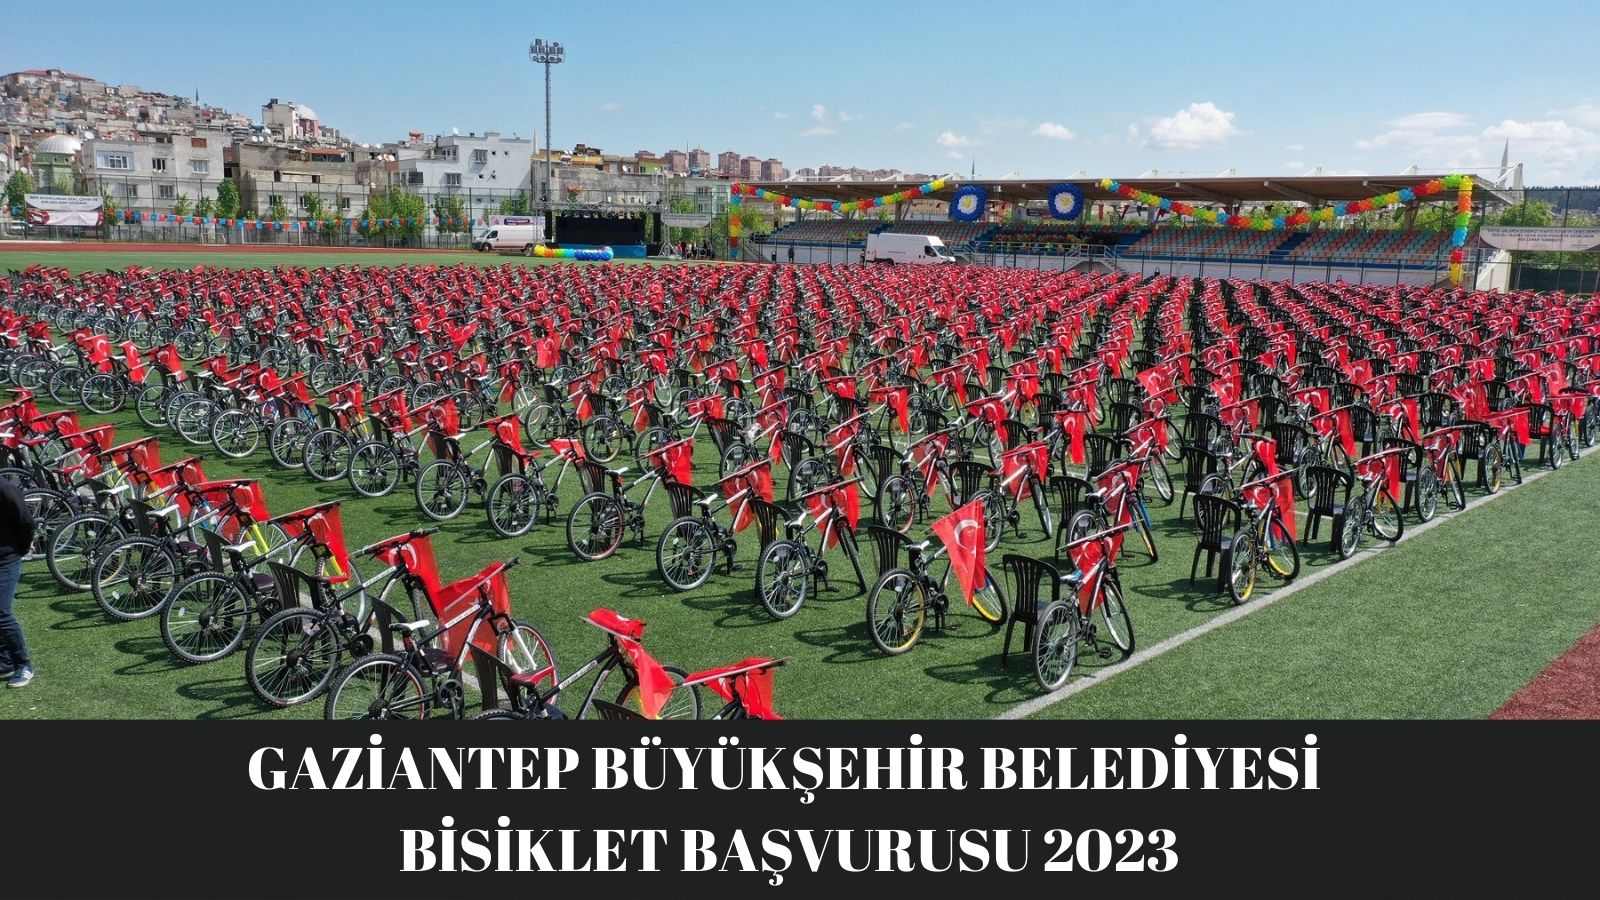 Gaziantep büyükşehir belediyesi bisiklet başvurusu 2023